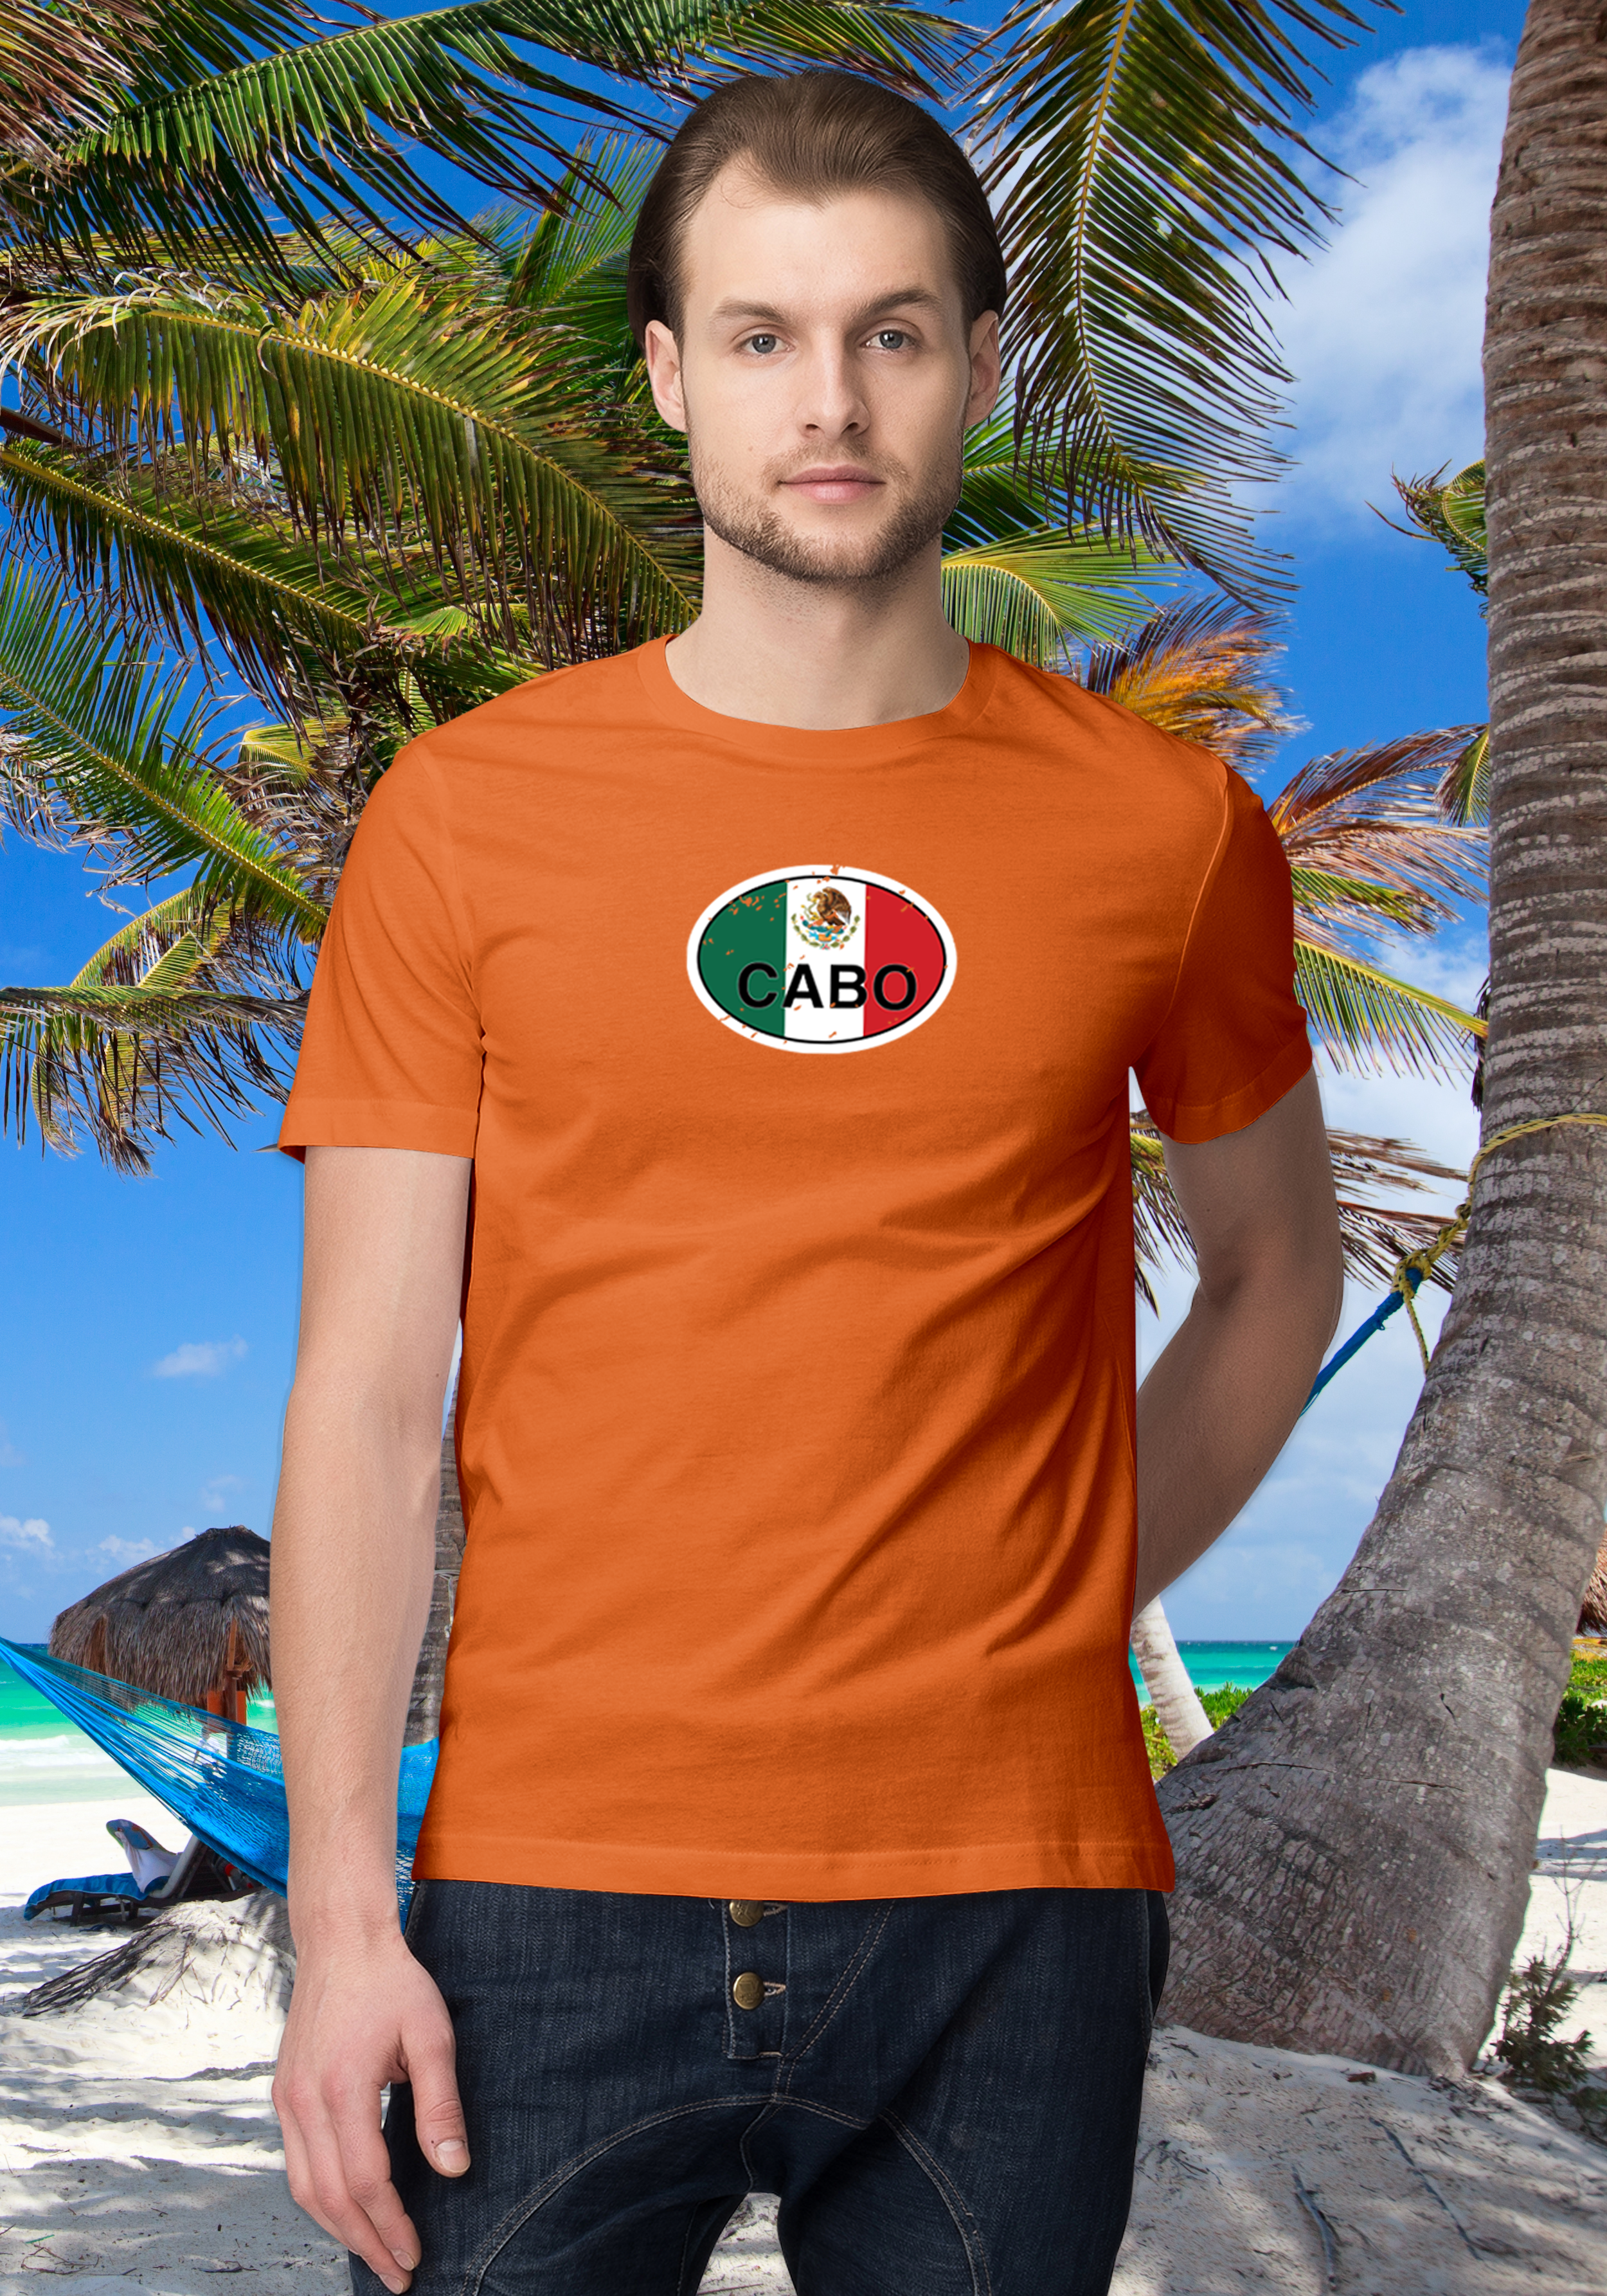 Cabo Men's Flag T-Shirt Souvenirs - My Destination Location